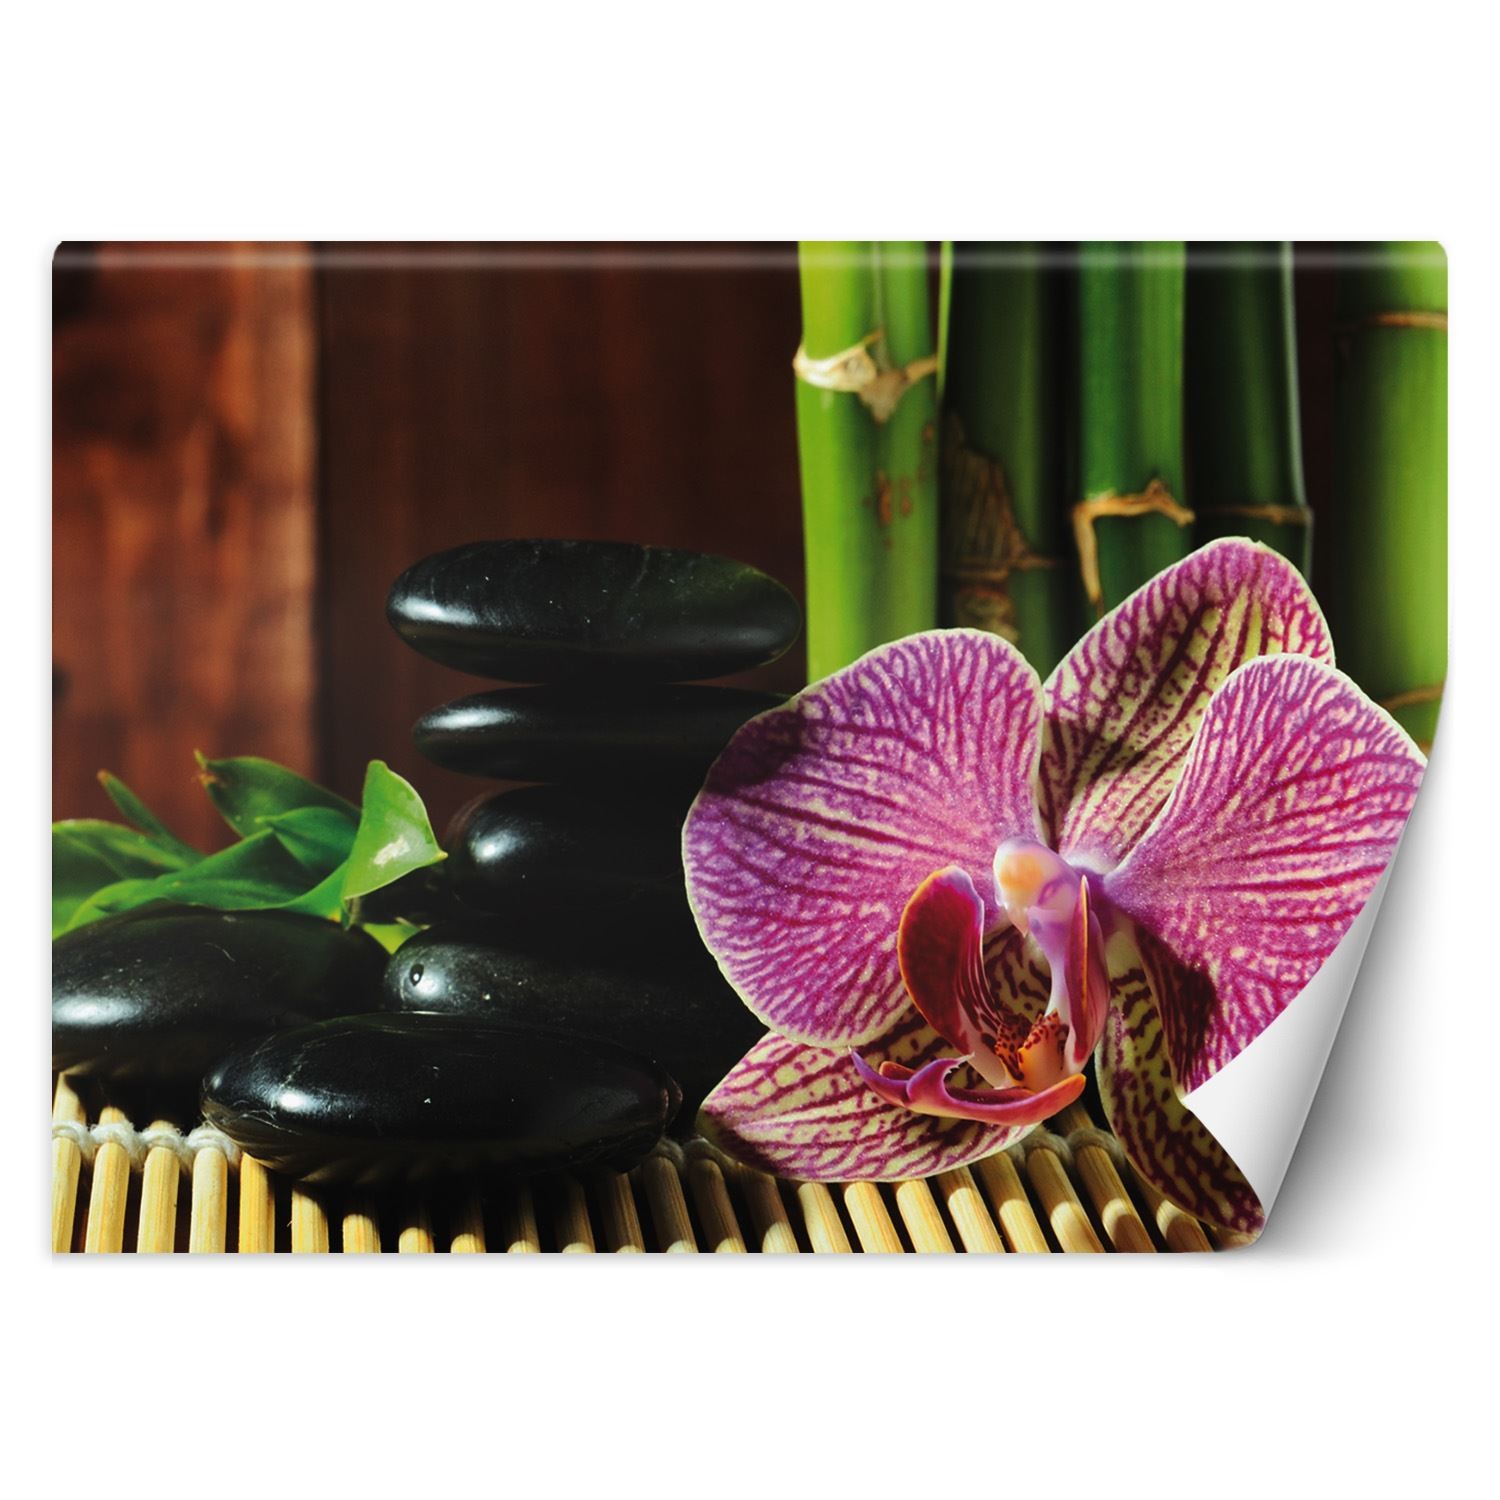 Trend24 – Behang – Orchid – Vliesbehang – Fotobehang – Behang Woonkamer – 400x280x2 cm – Incl. behanglijm